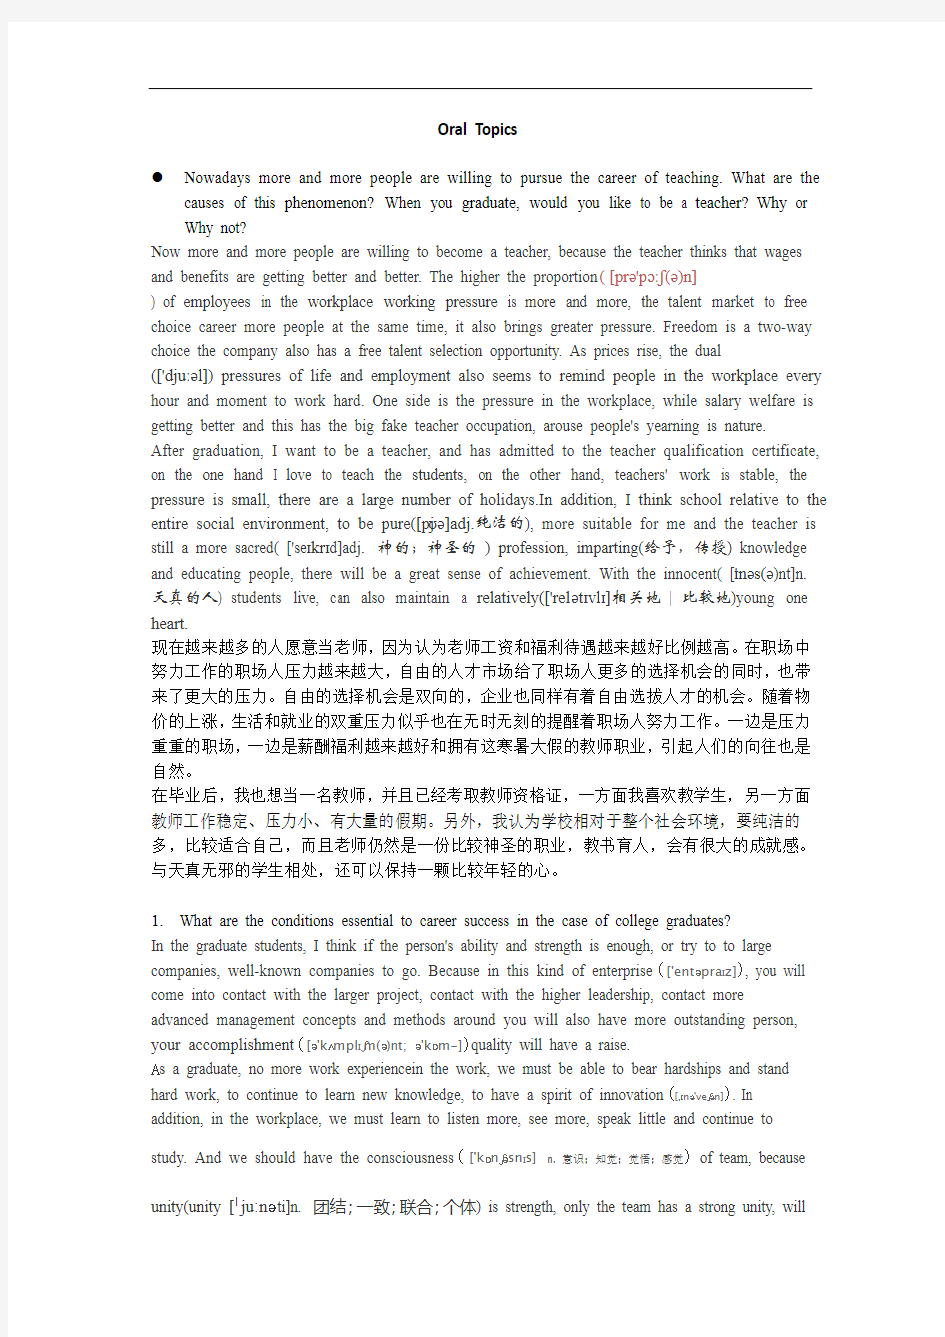 上海海事大学英语口语考试题目及答案